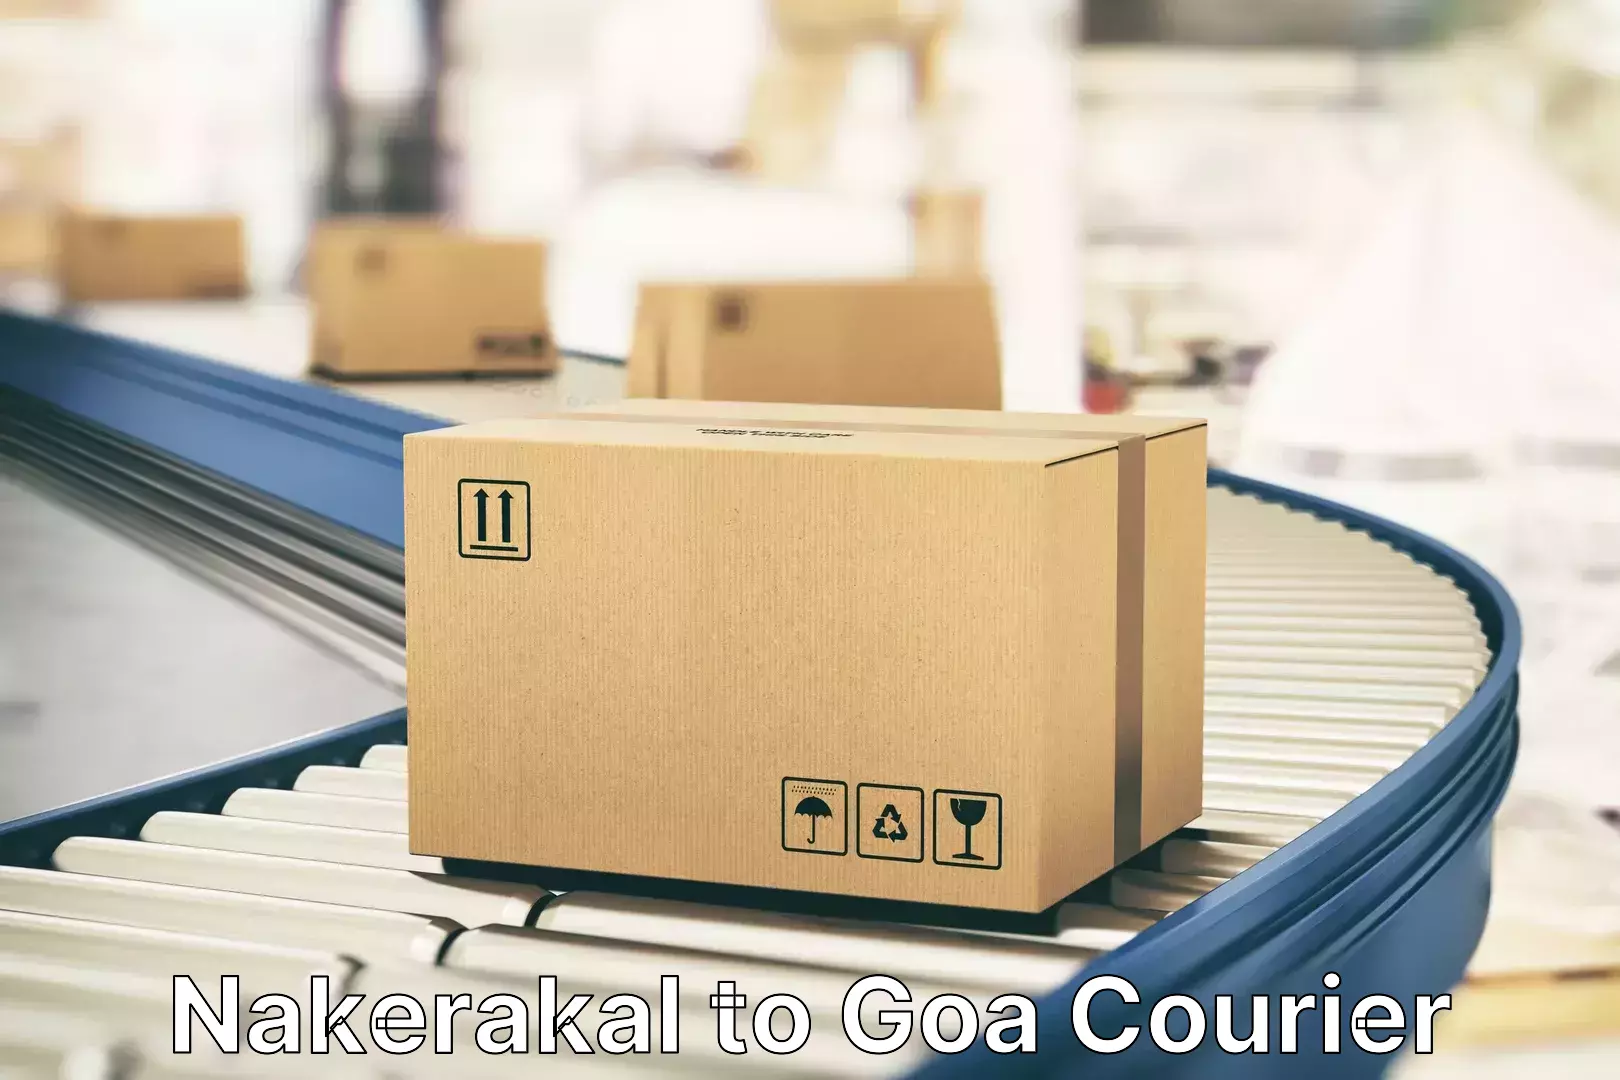 Reliable luggage courier Nakerakal to NIT Goa